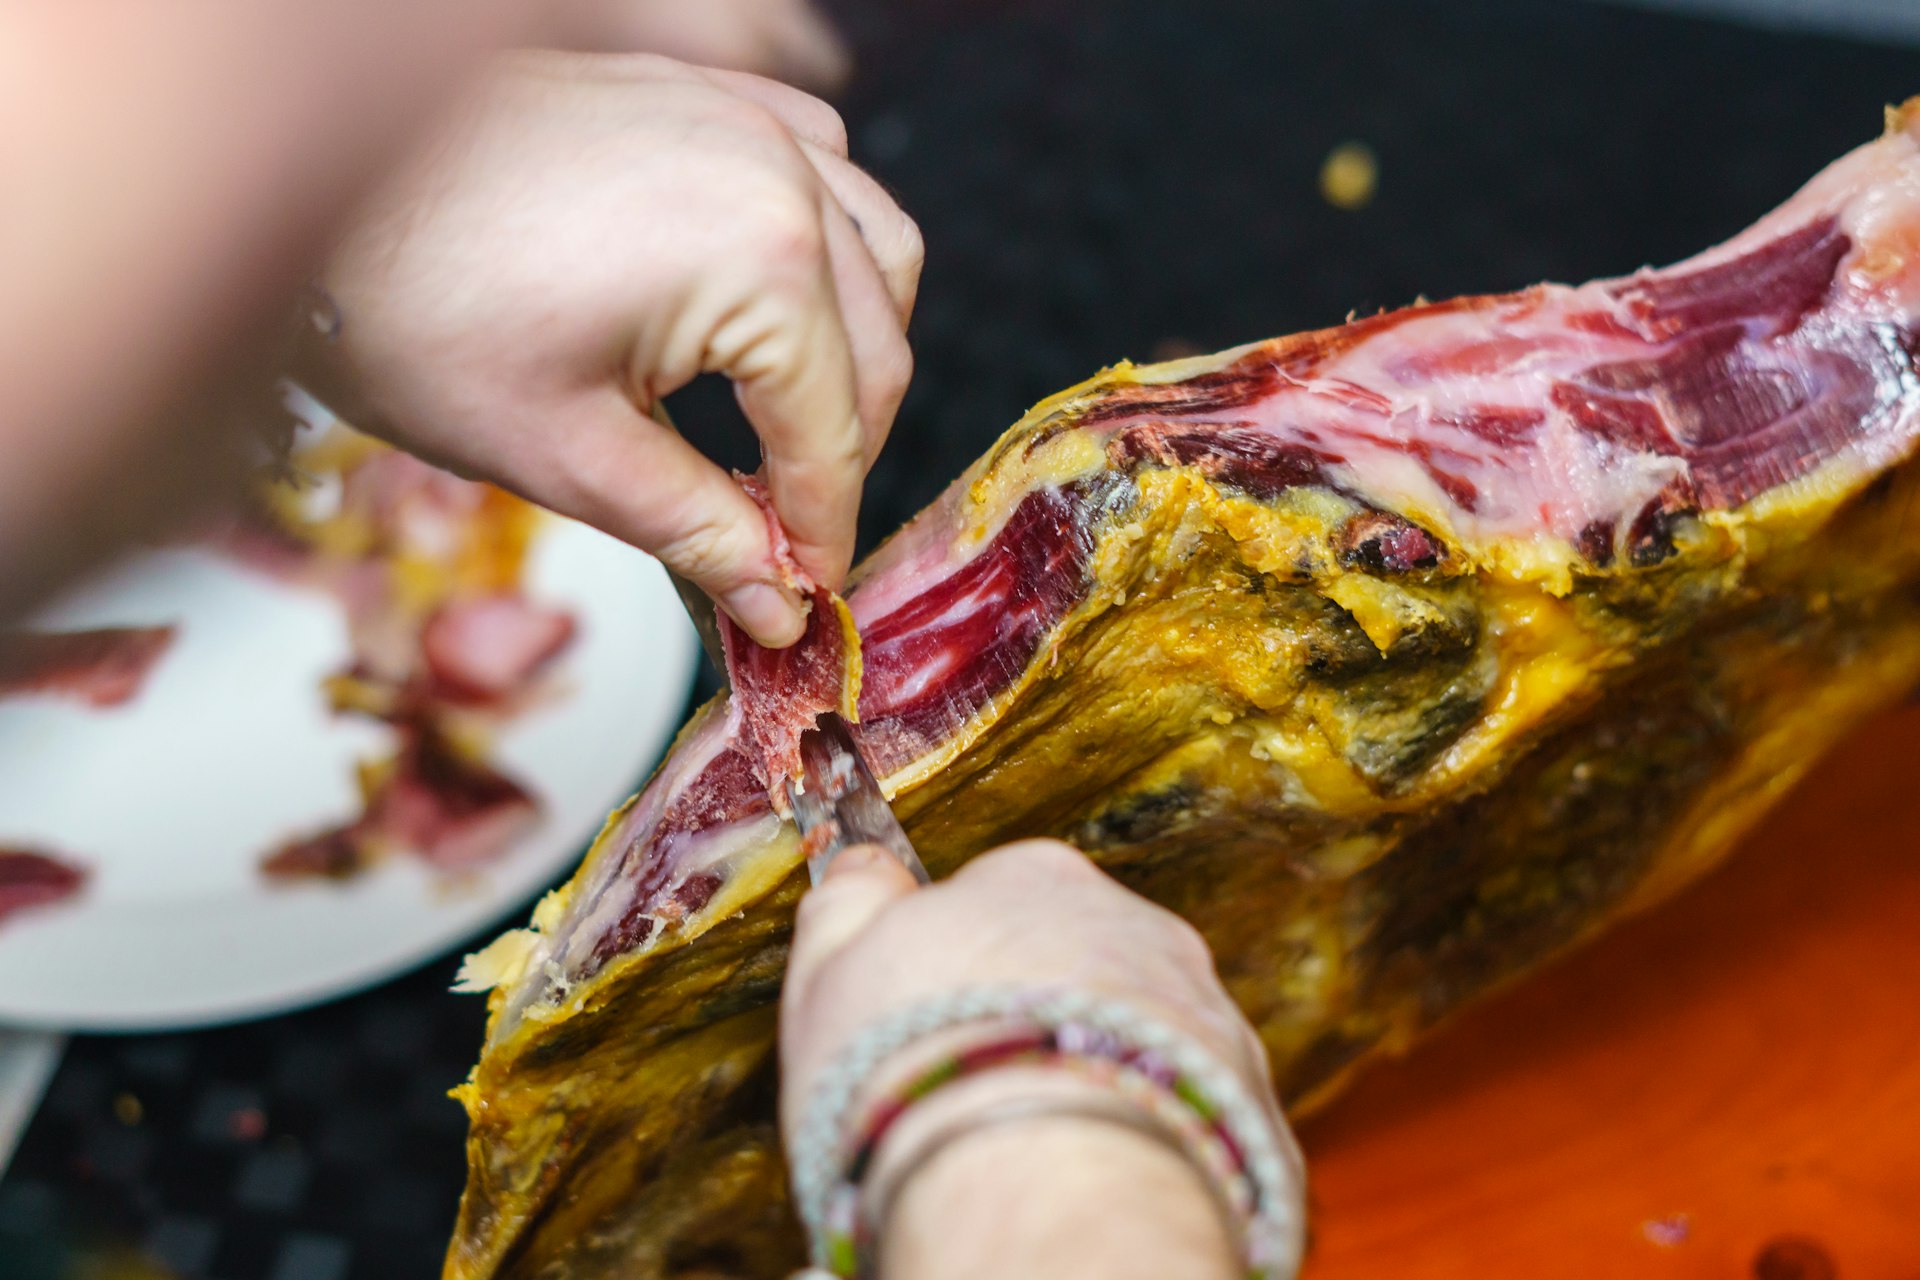 Cutting Spanish acorn-fed Iberian jamón ham with a sharp knife, Spain